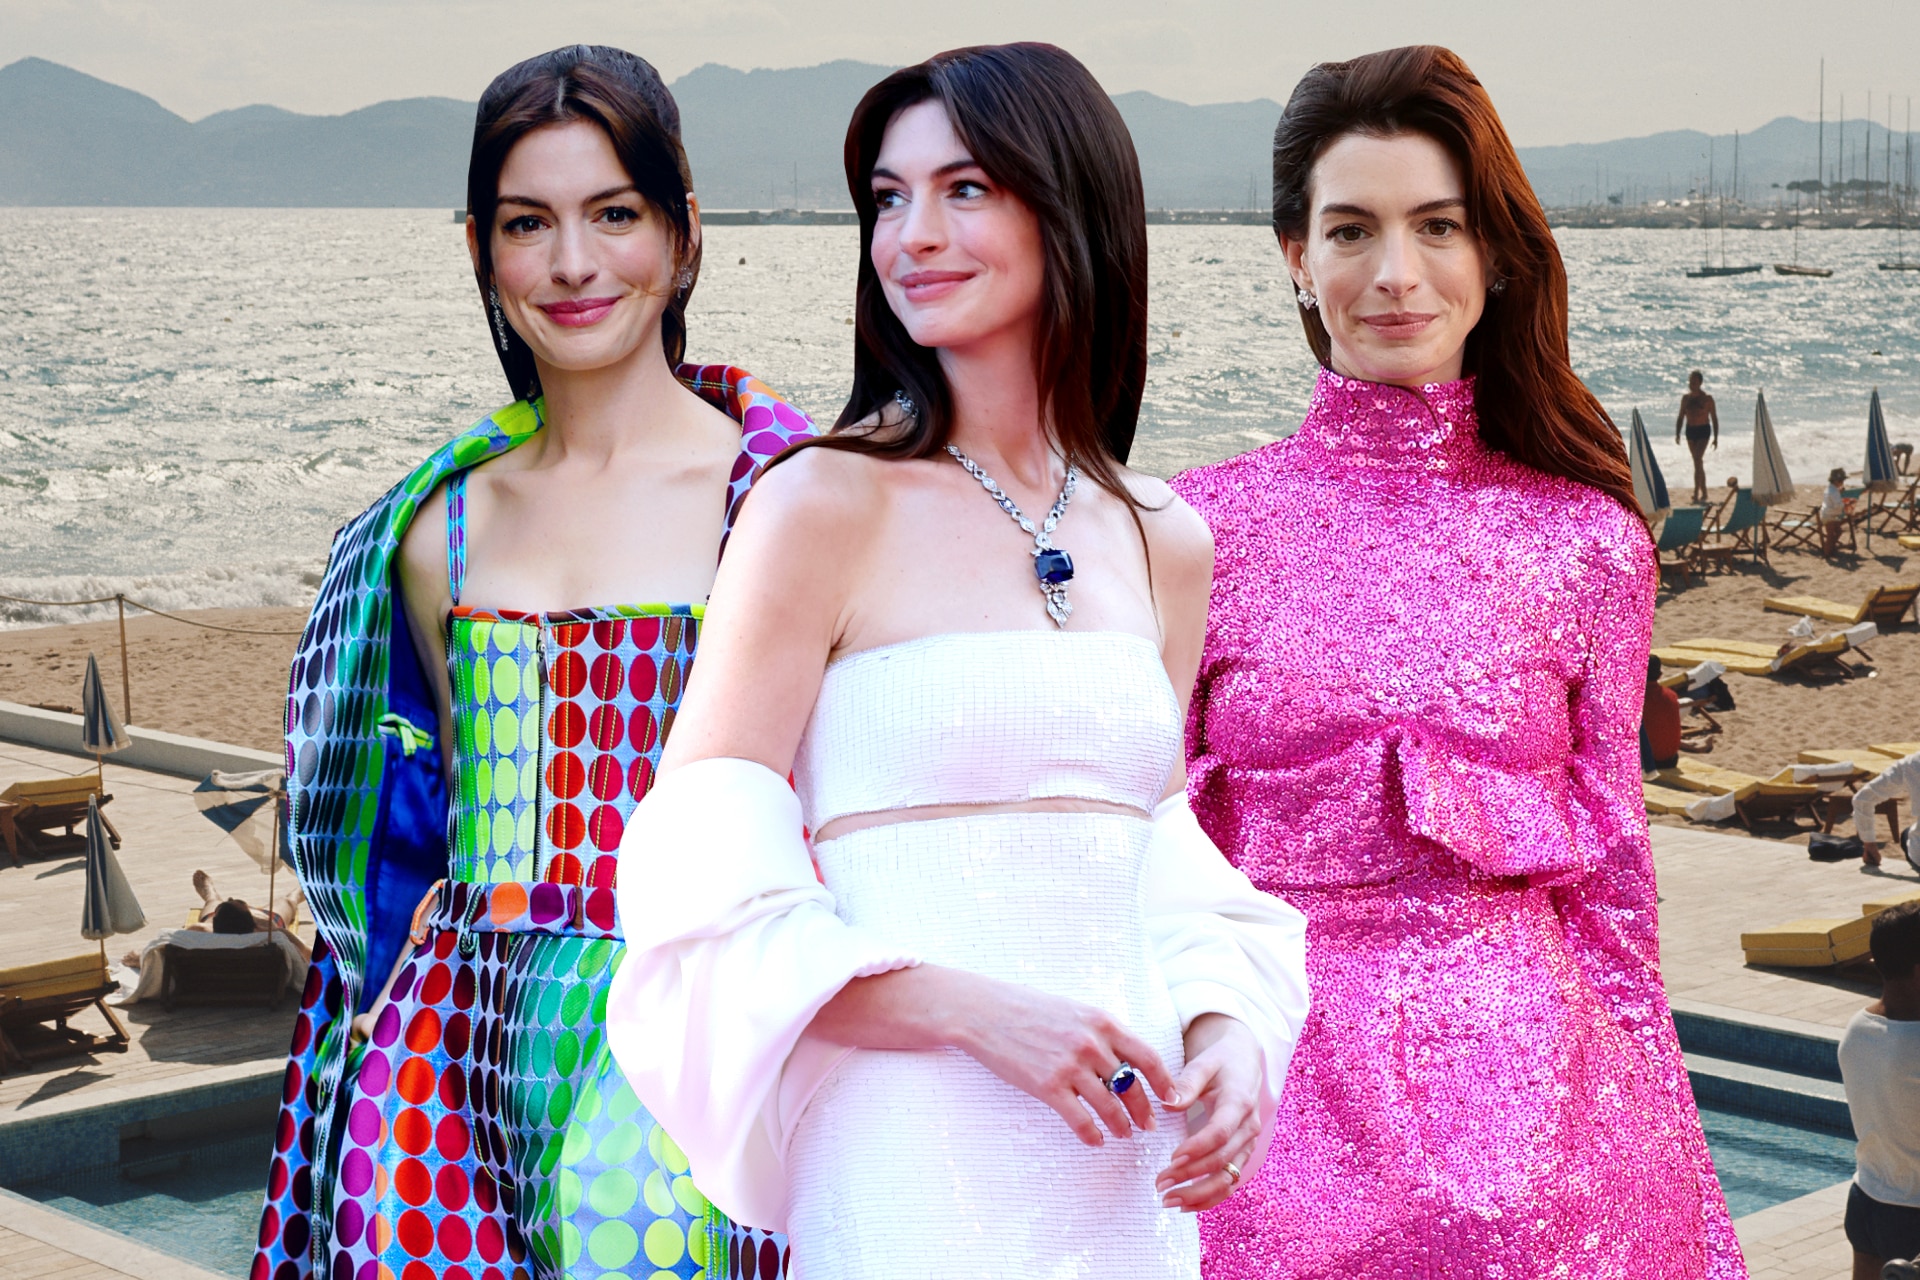 Anne Hathaway Wore Schiaparelli, Louis Vuitton & Valentino During